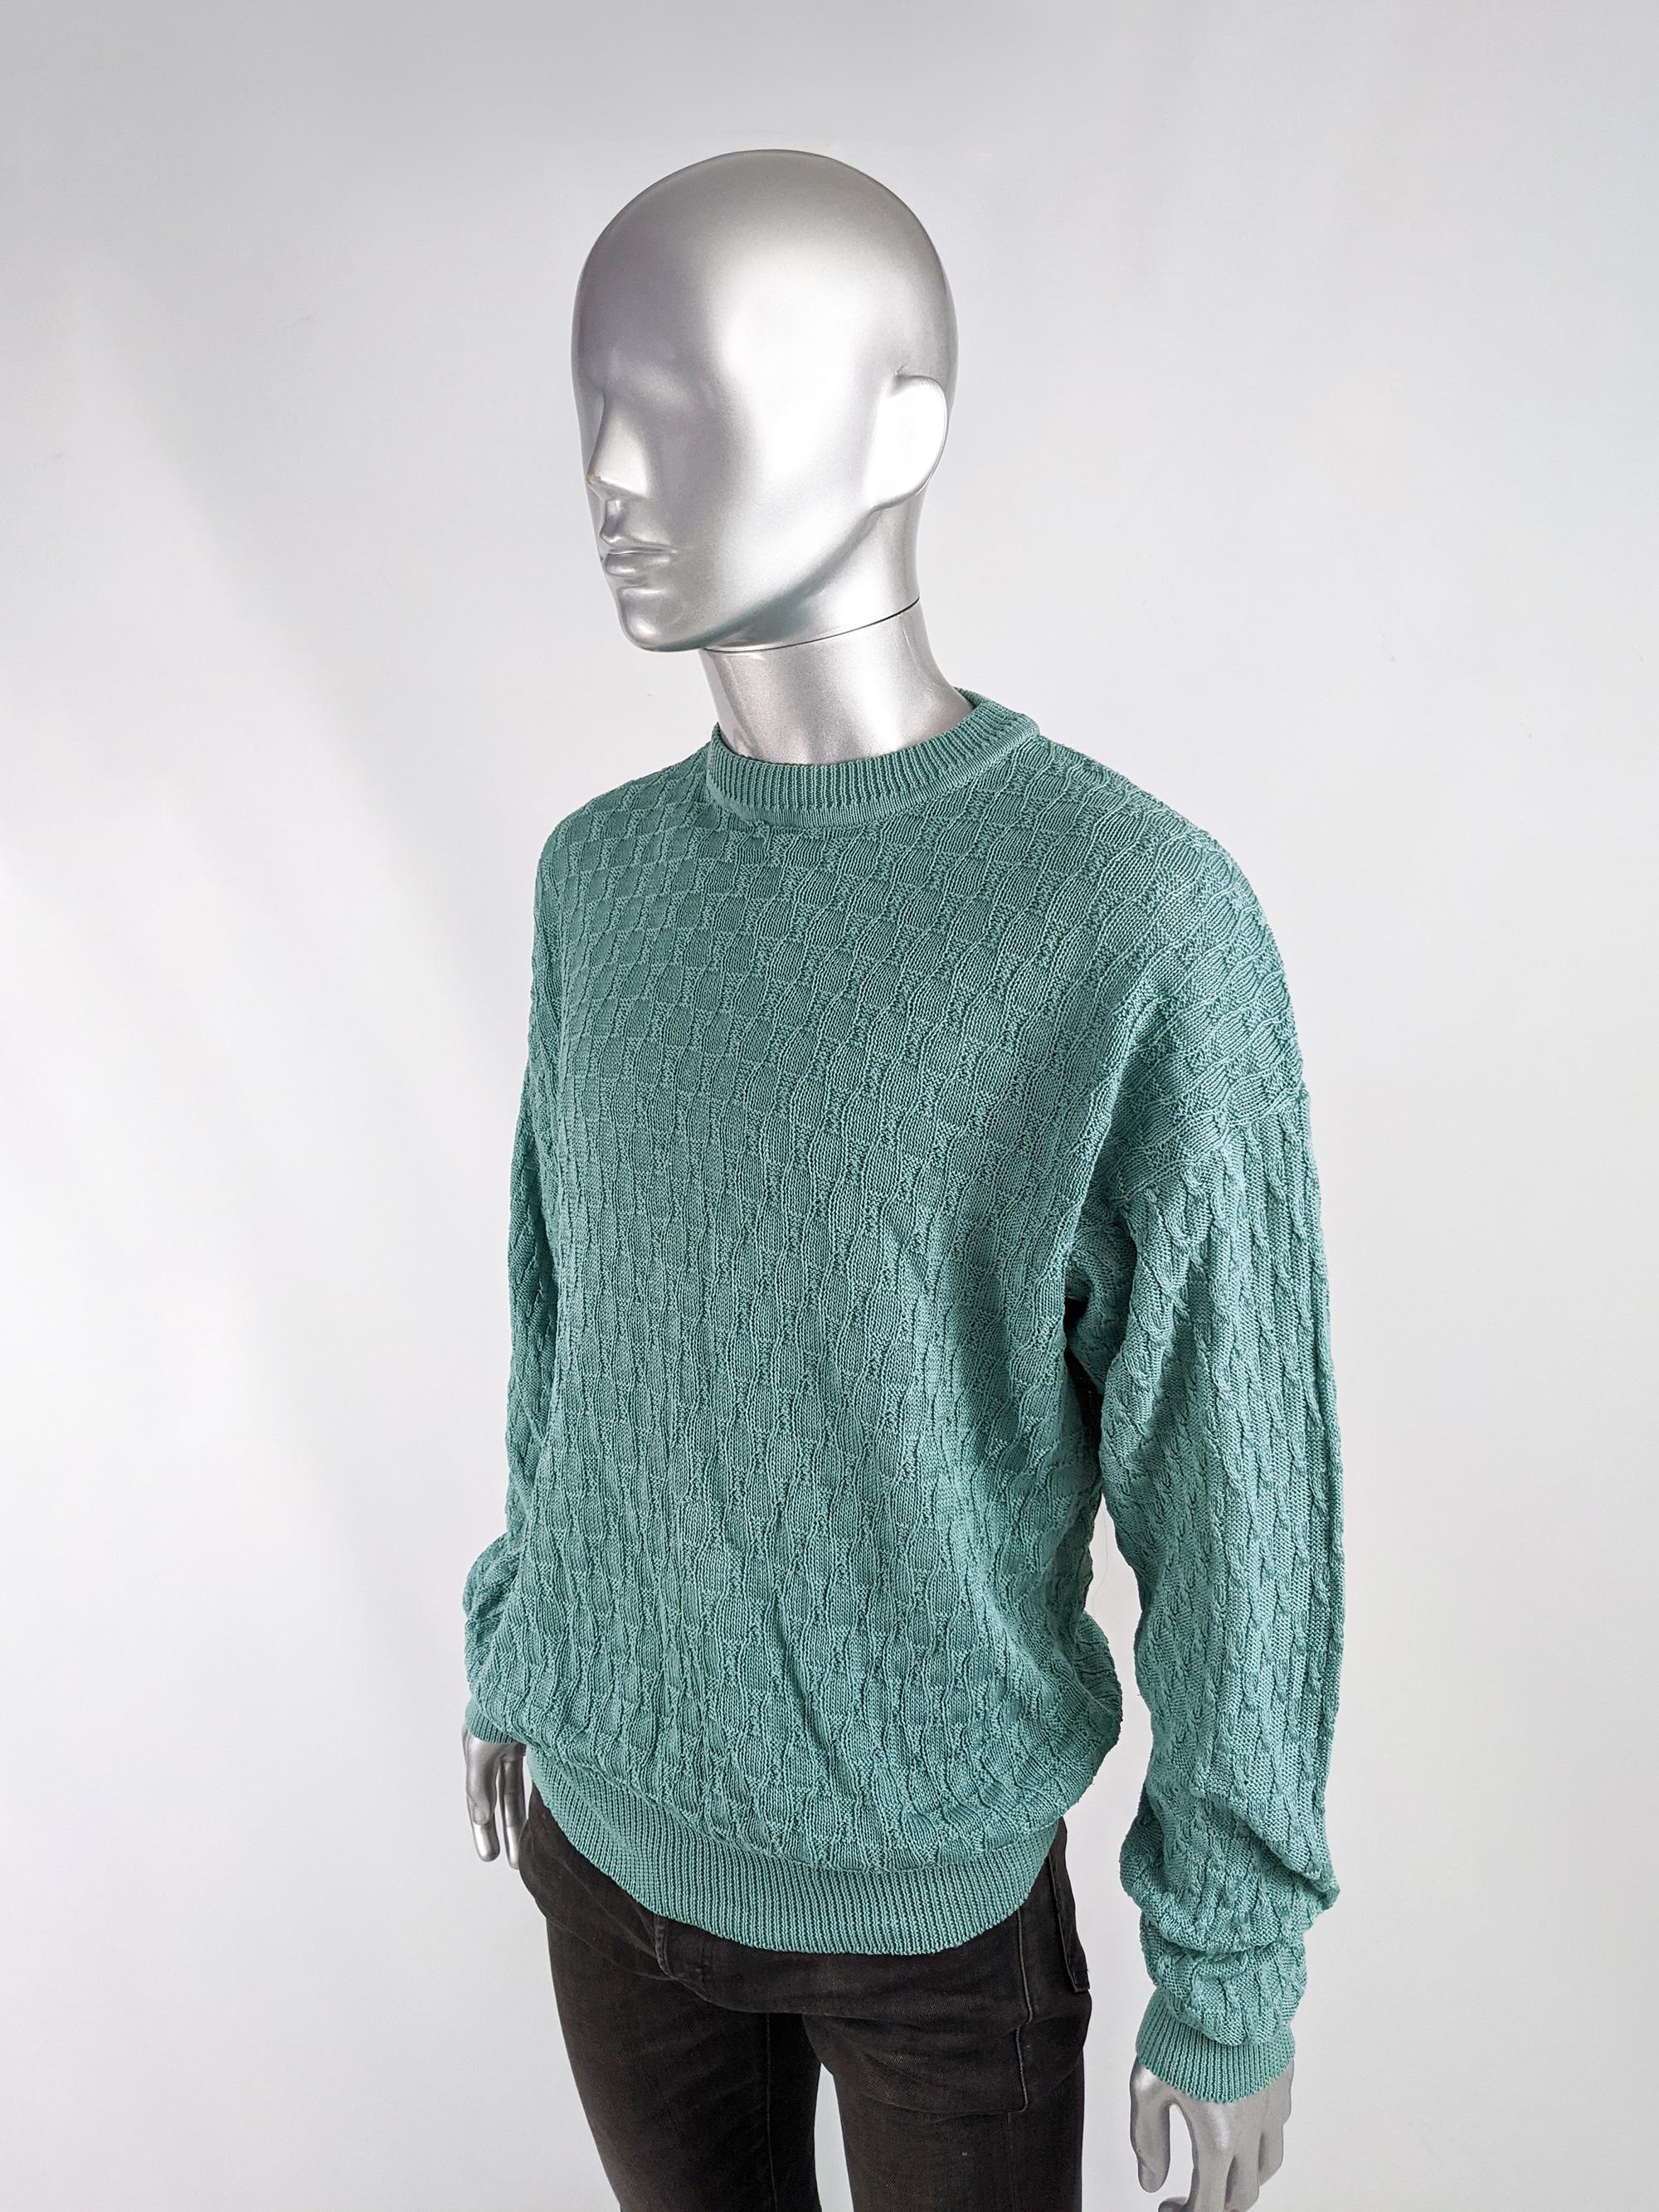 Blue Emanuel Ungaro Vintage Mens Twisted Knit Jumper Sweater, 1980s